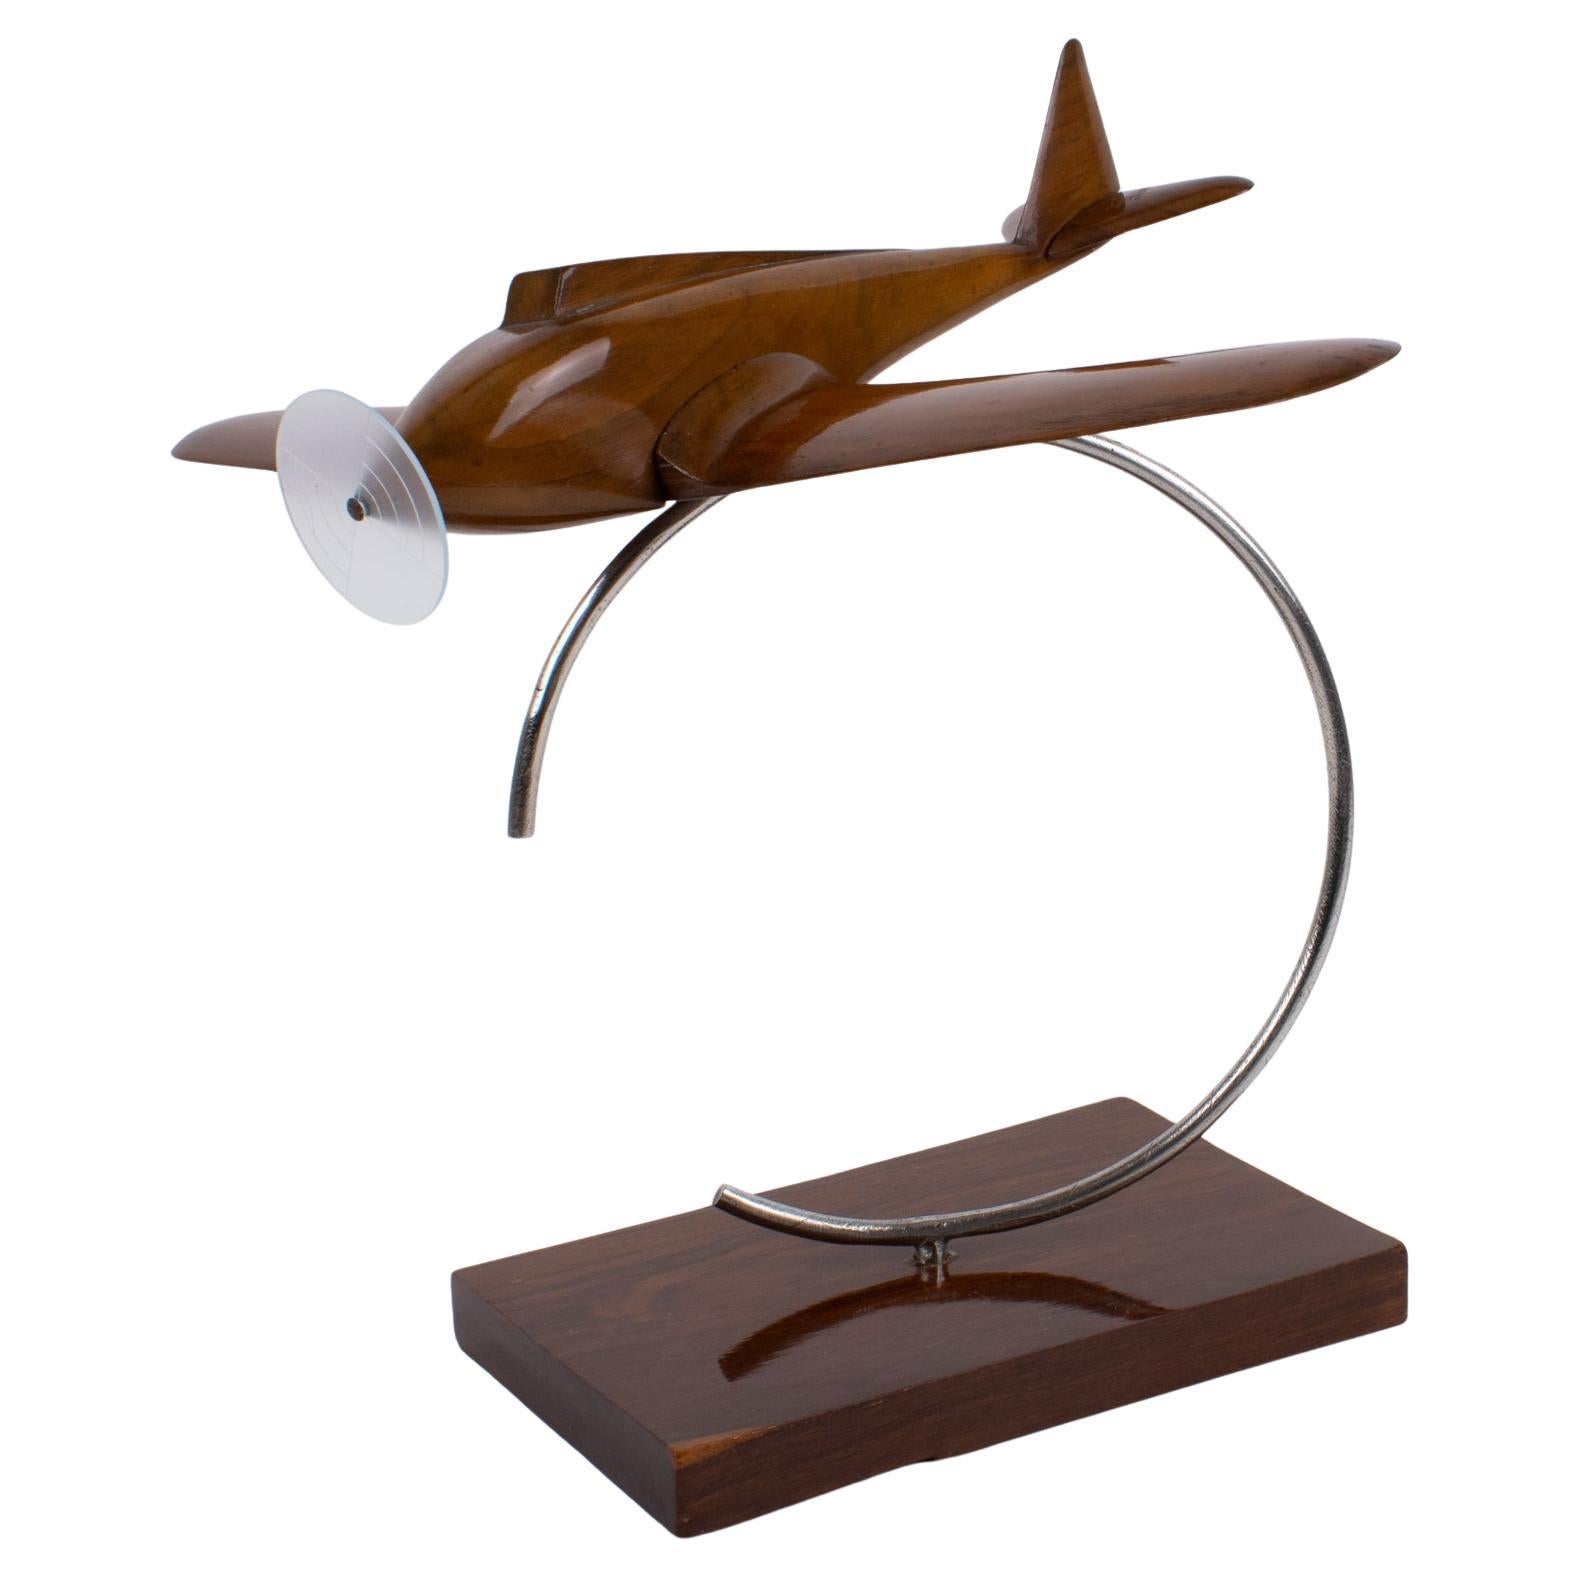 Art Deco Holz und Metall Flugzeug Luftfahrt Propeller Modell, Frankreich 1930er Jahre